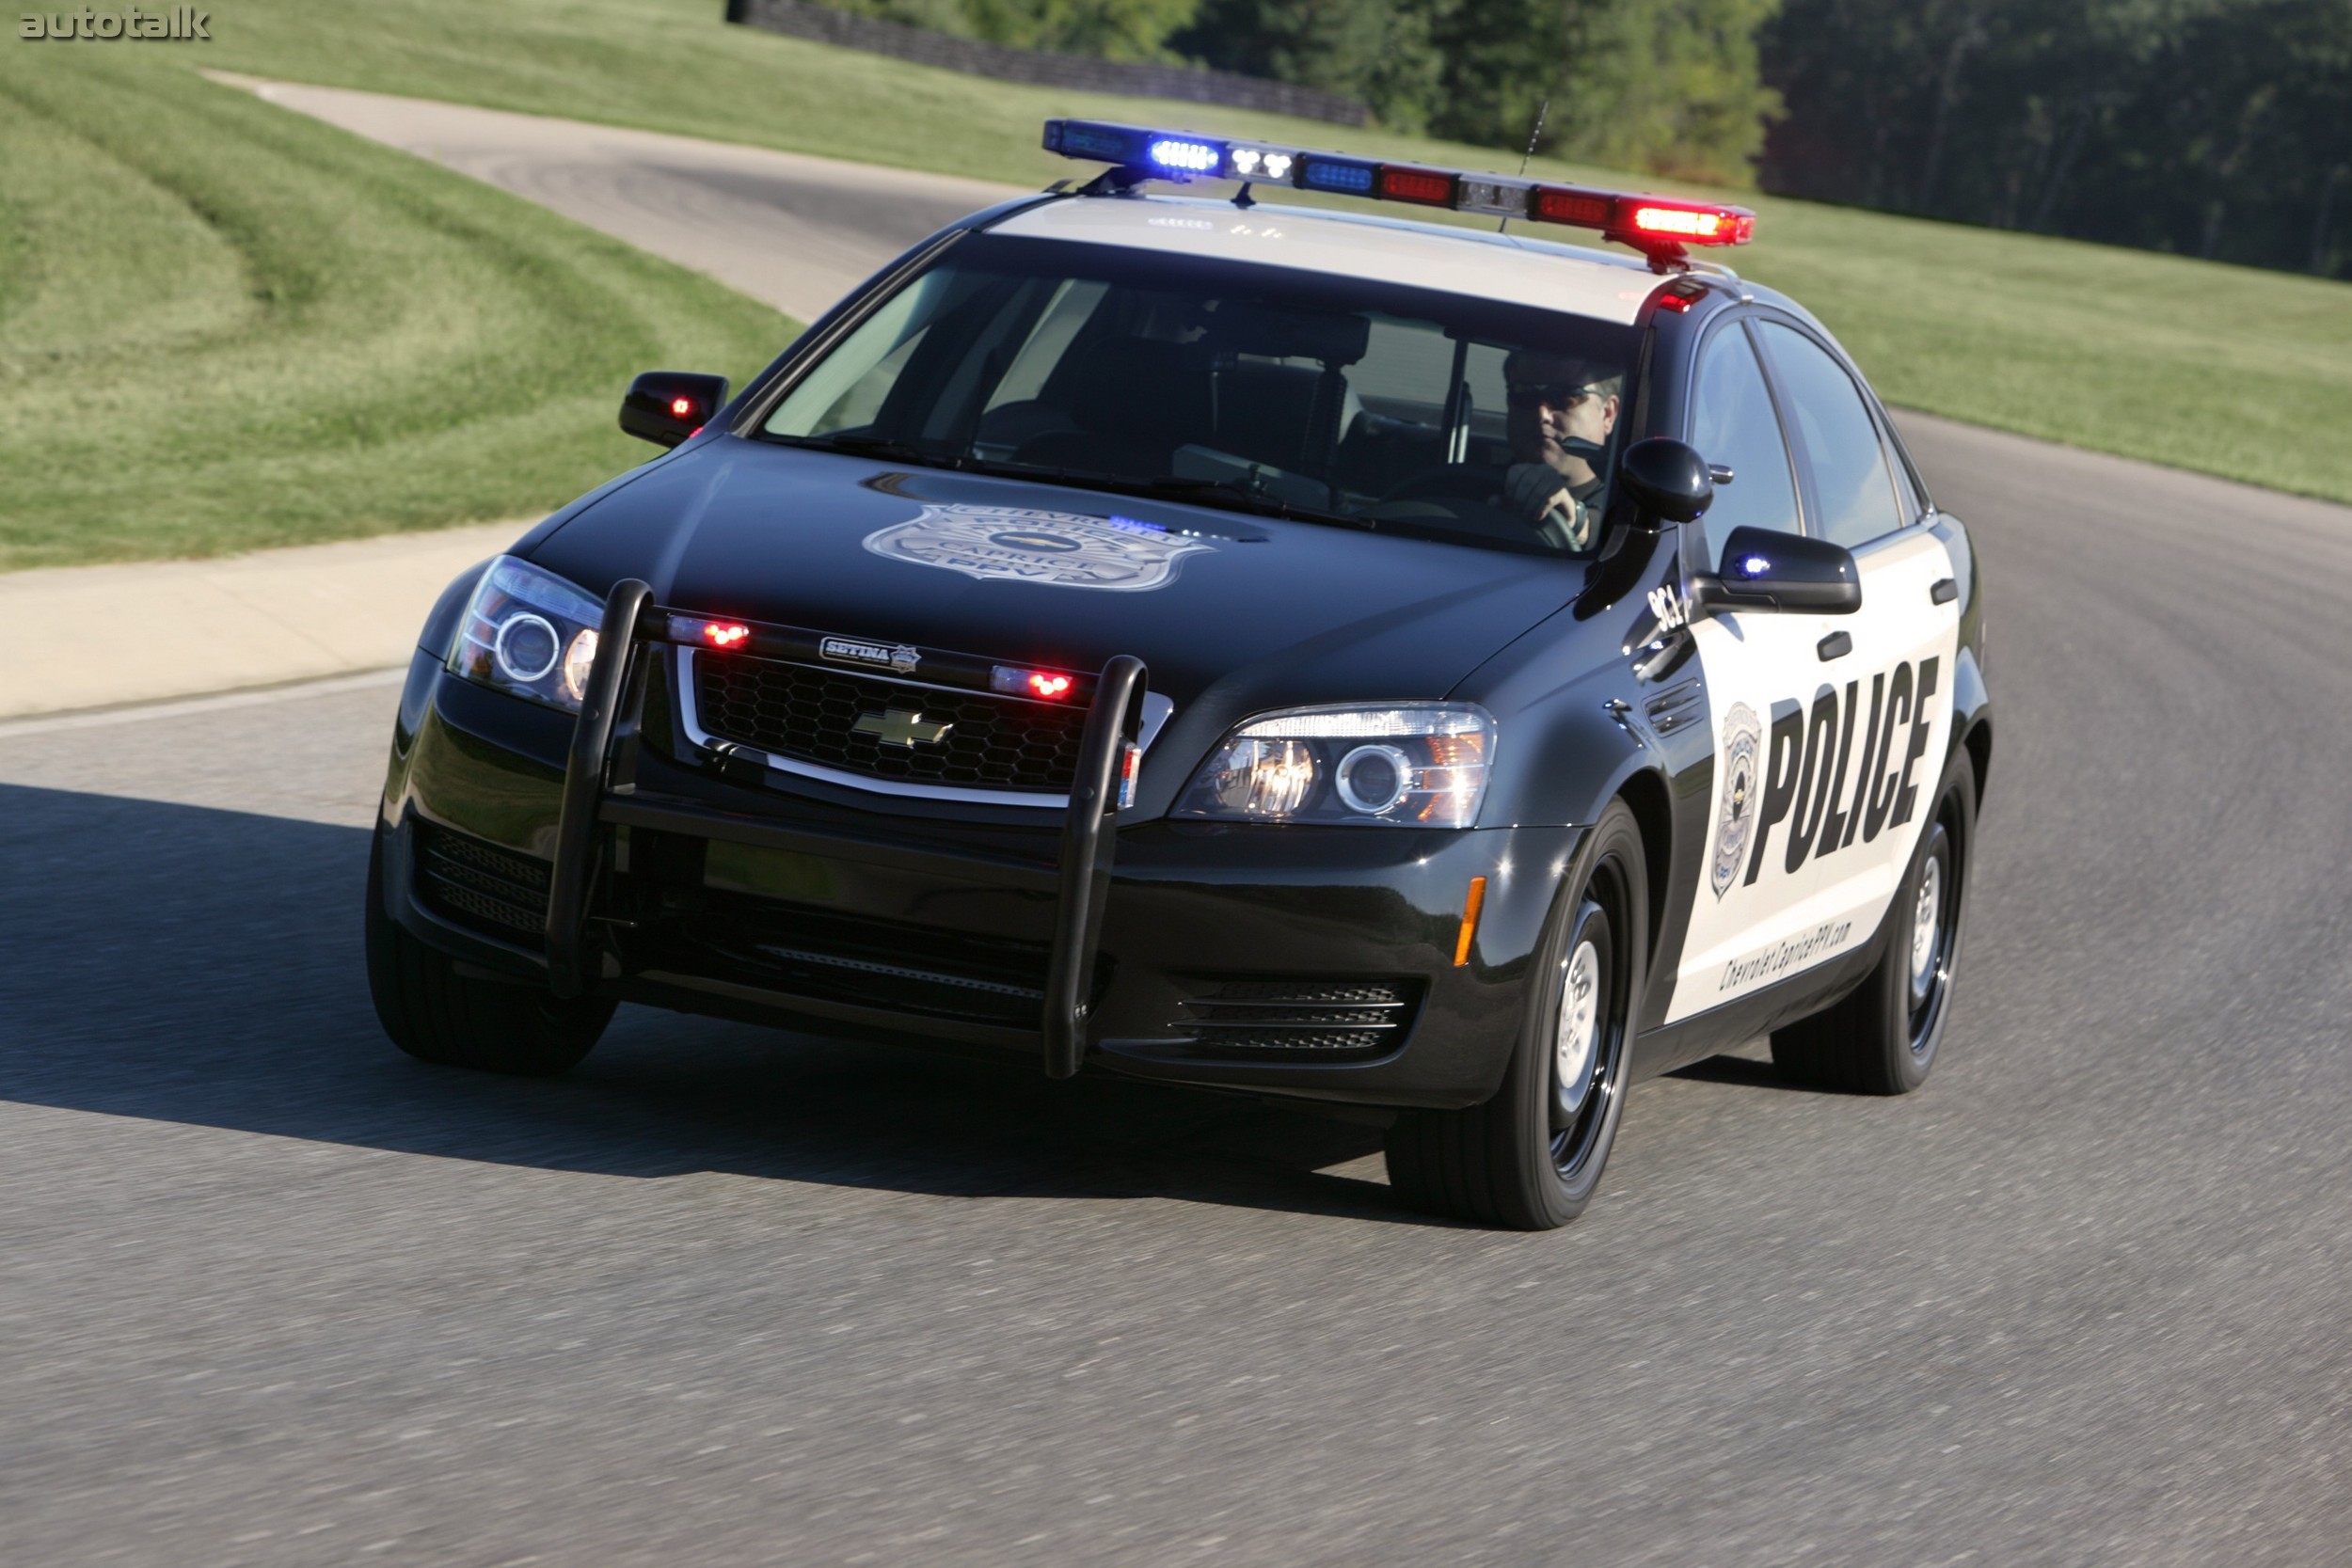 Полицейская машина уезжает. Chevrolet Caprice Police 2010. Chevrolet Caprice 2006 Police. Chevrolet Caprice 2015 Police. Шевроле Каприс полиции США.